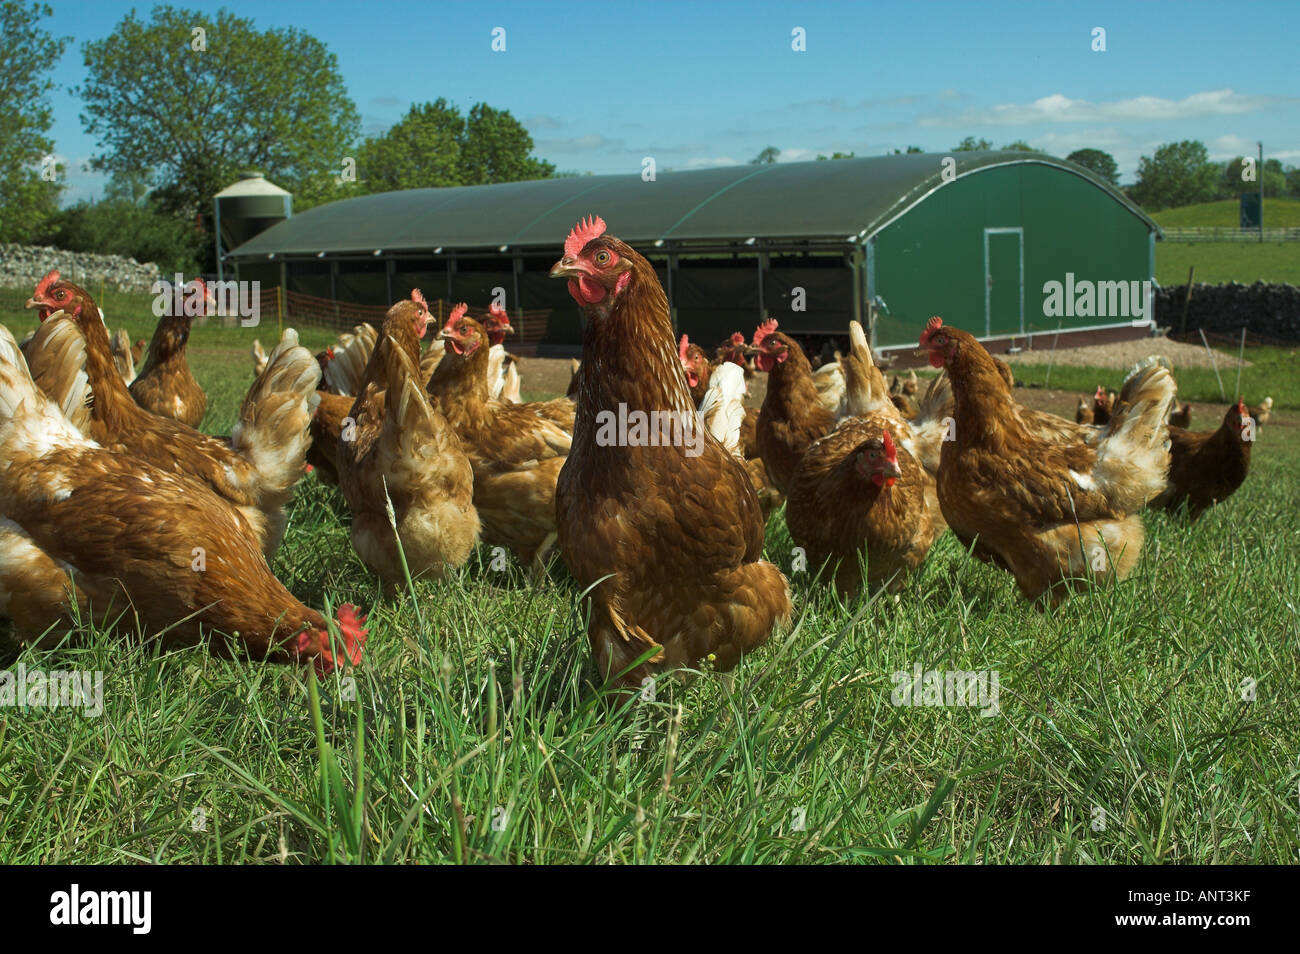 Free Range hens organiques sur ferme près de thier hut Banque D'Images